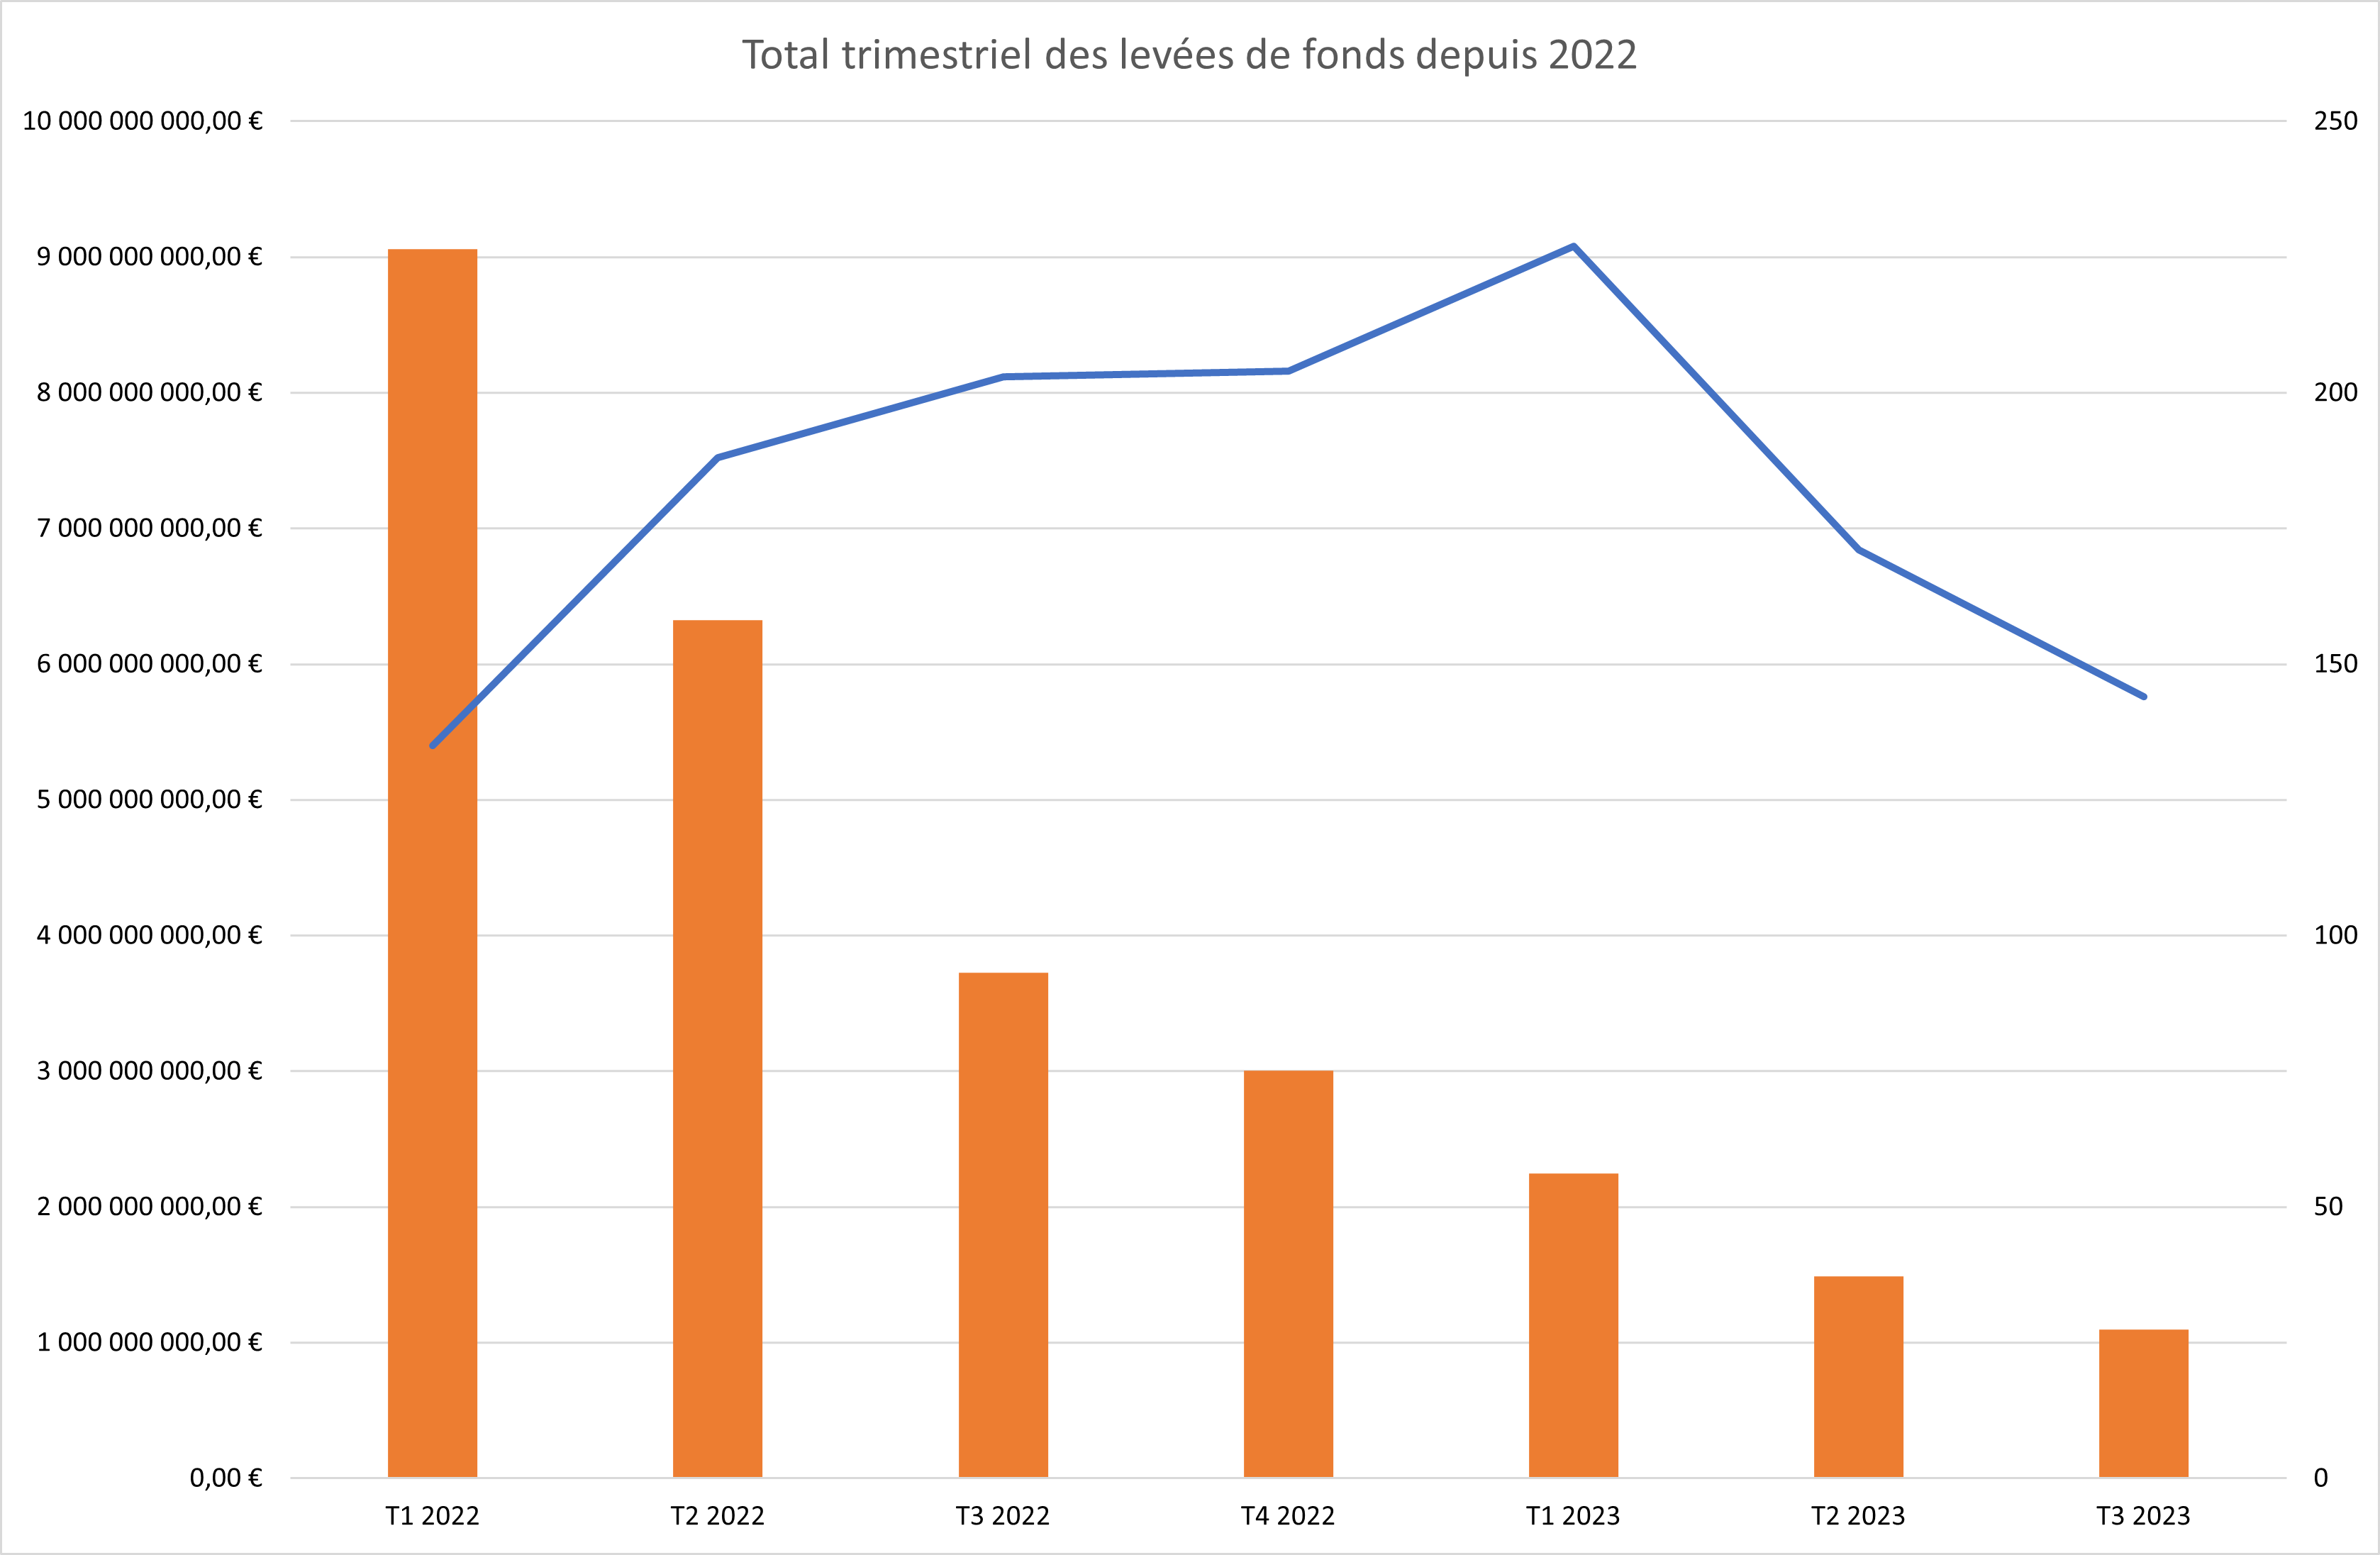 Total trimestriel des levées de fonds depuis 2022